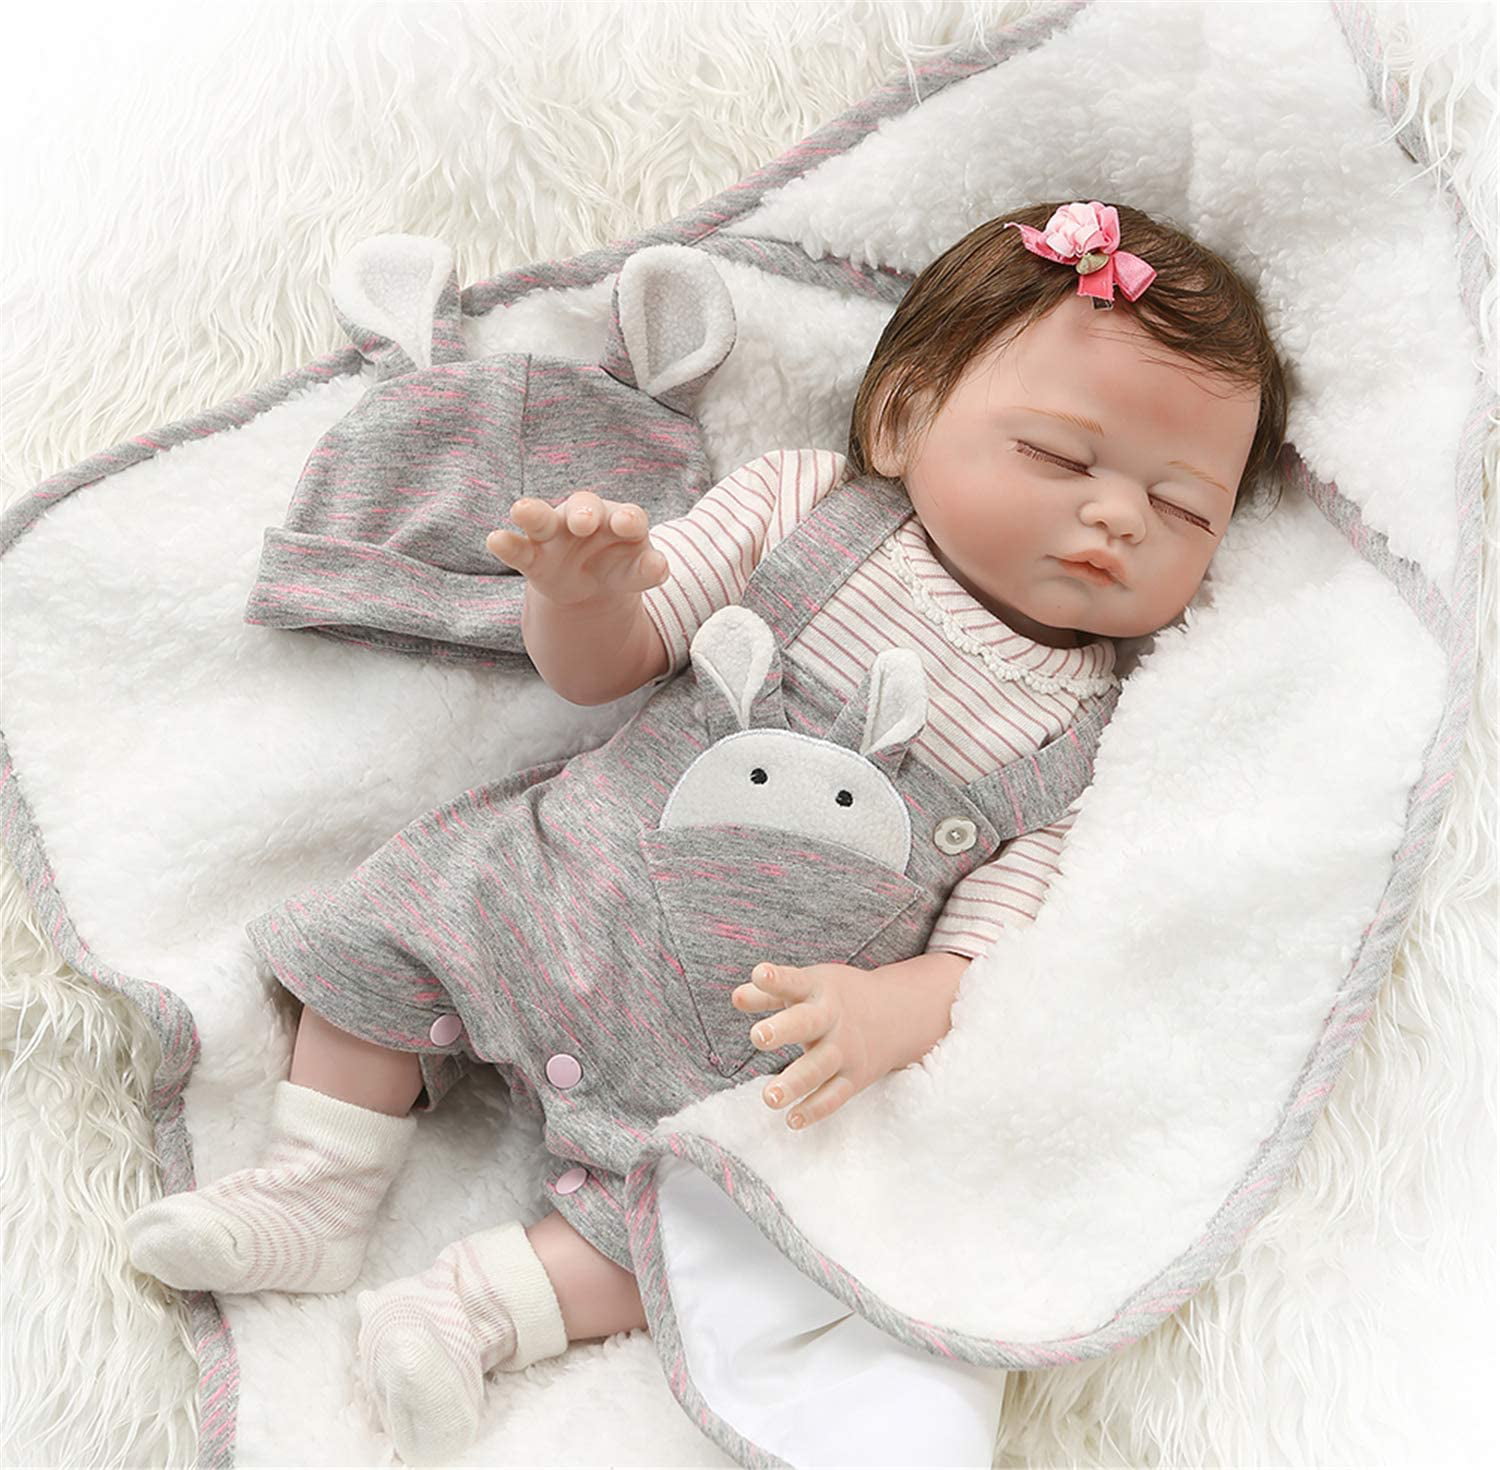 11" Full Body Silicone Reborn Preemie Baby Boy Doll Real Sleeping Kids Bath Toy 